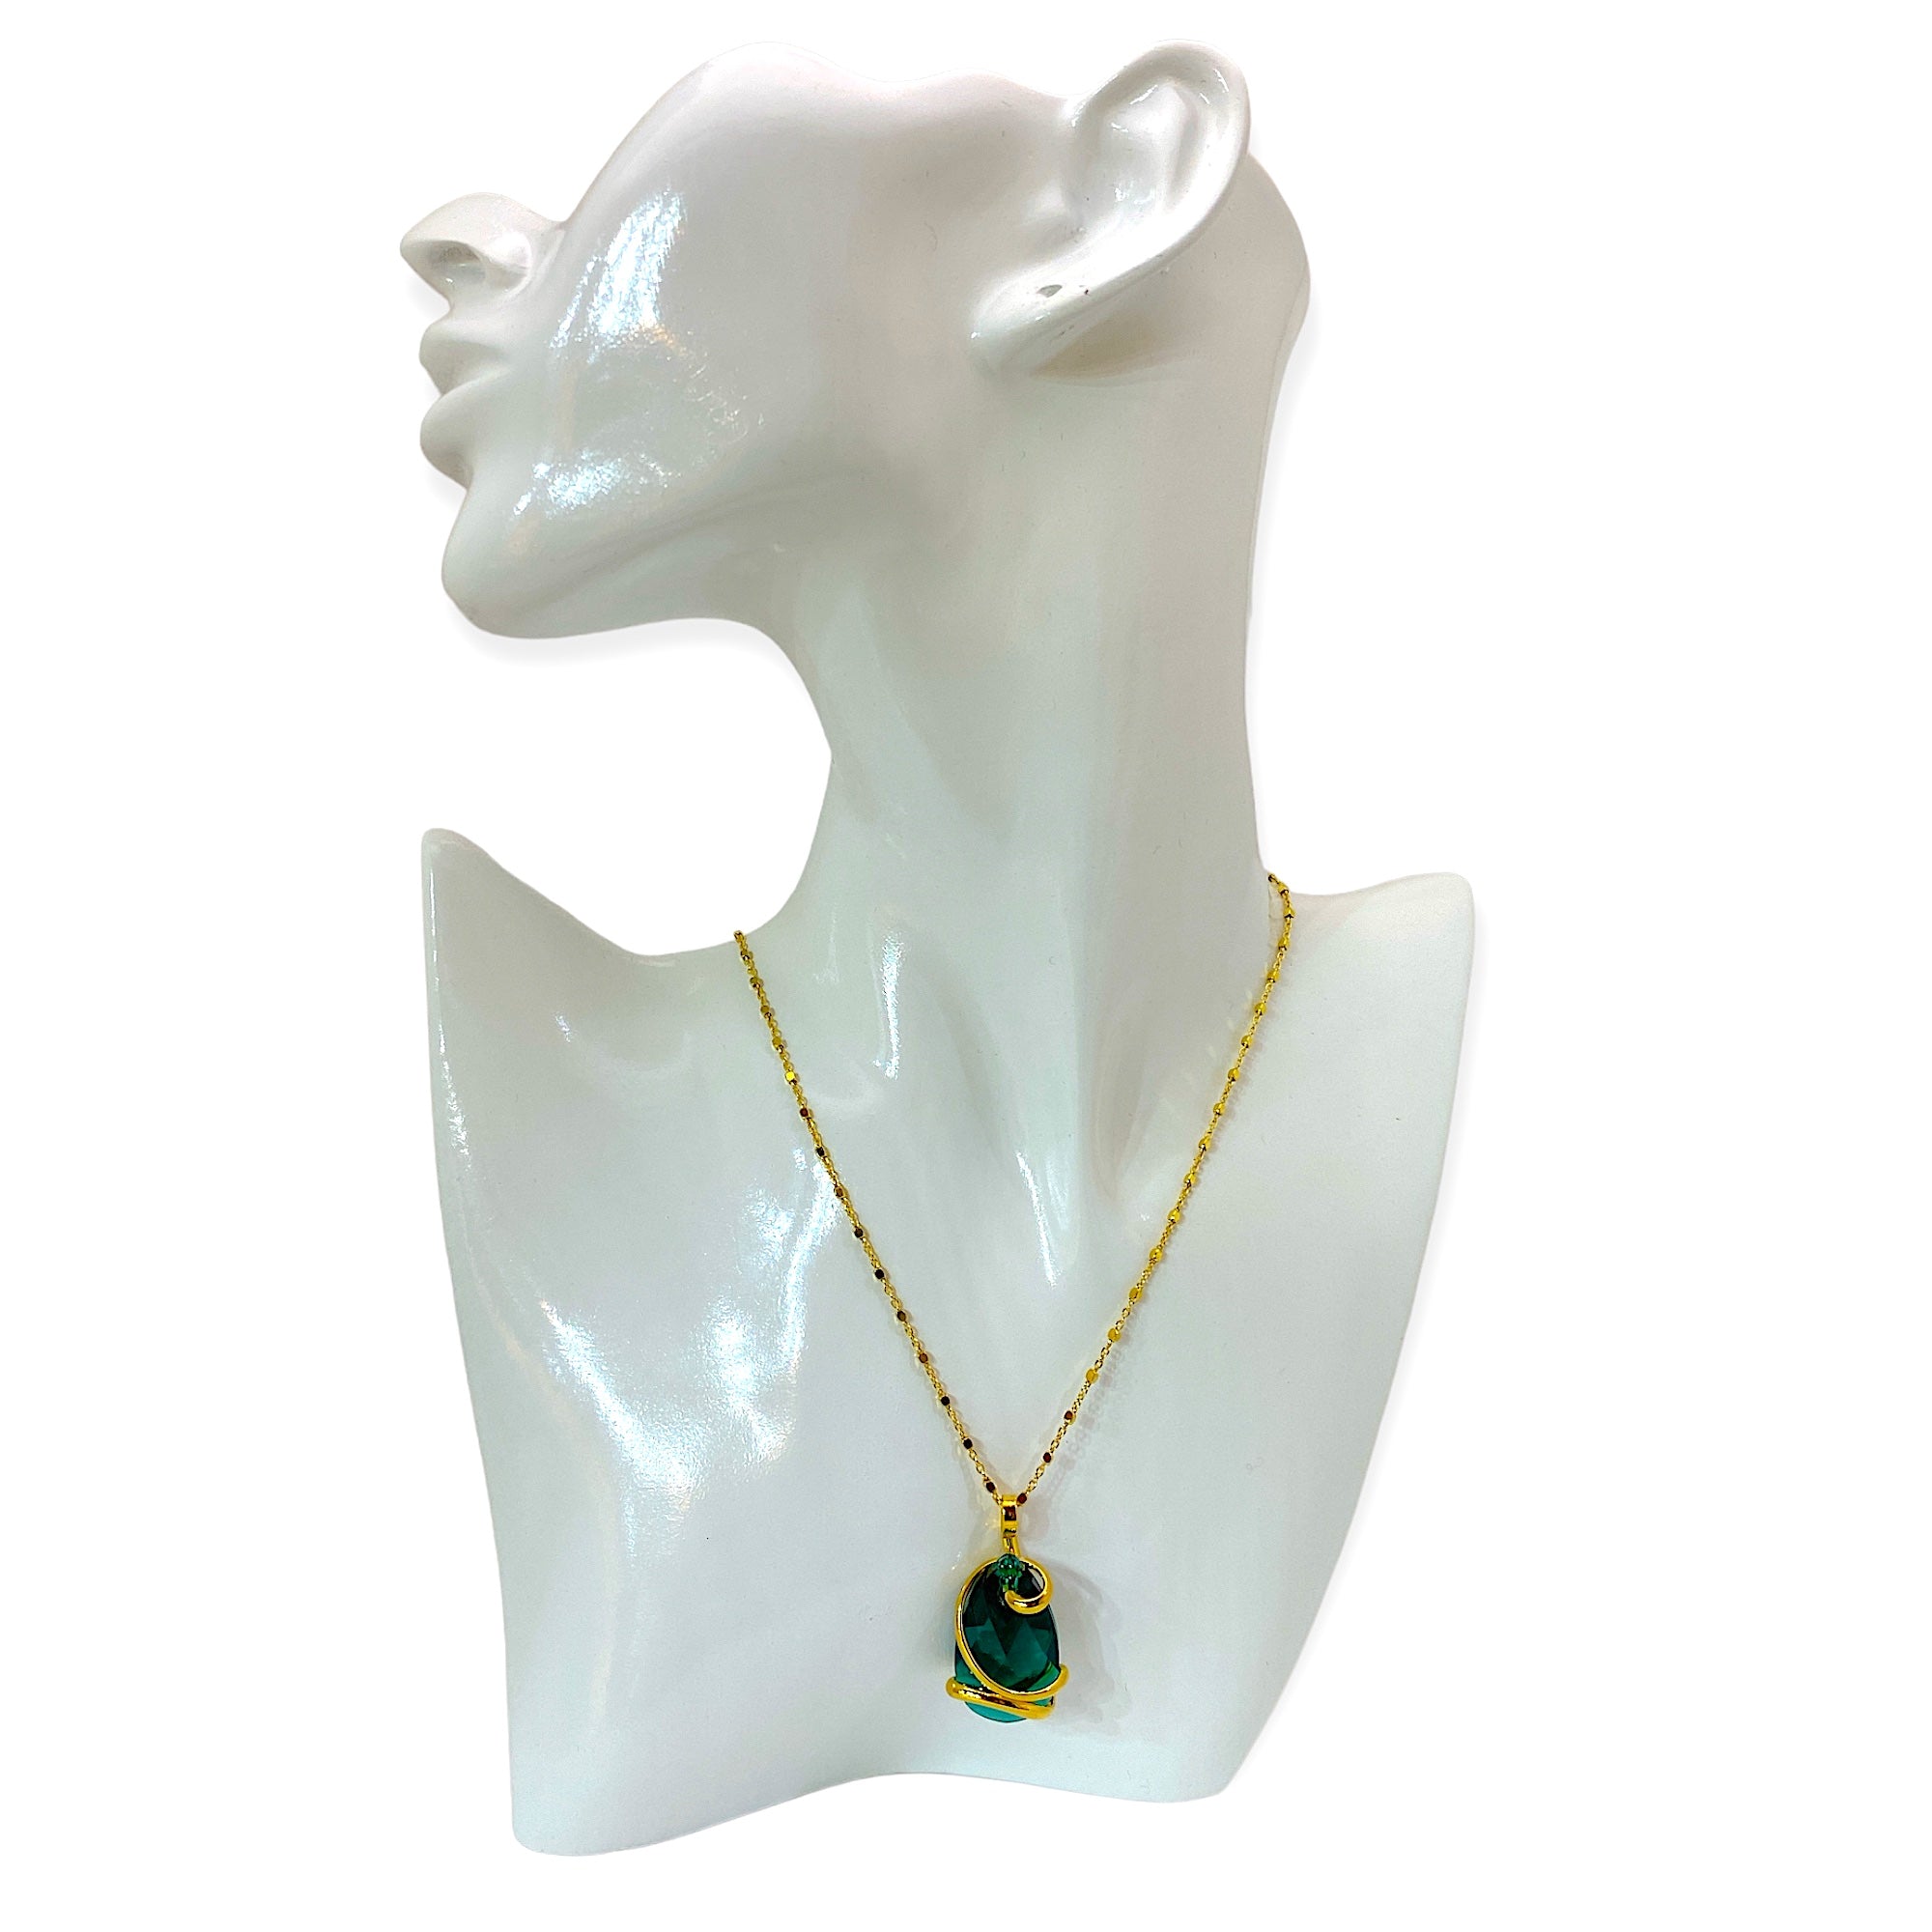 Un prezioso cristallo ispira il design unico di questa straordinaria collana realizzata in metallo Placcato Oro 24 Kt.